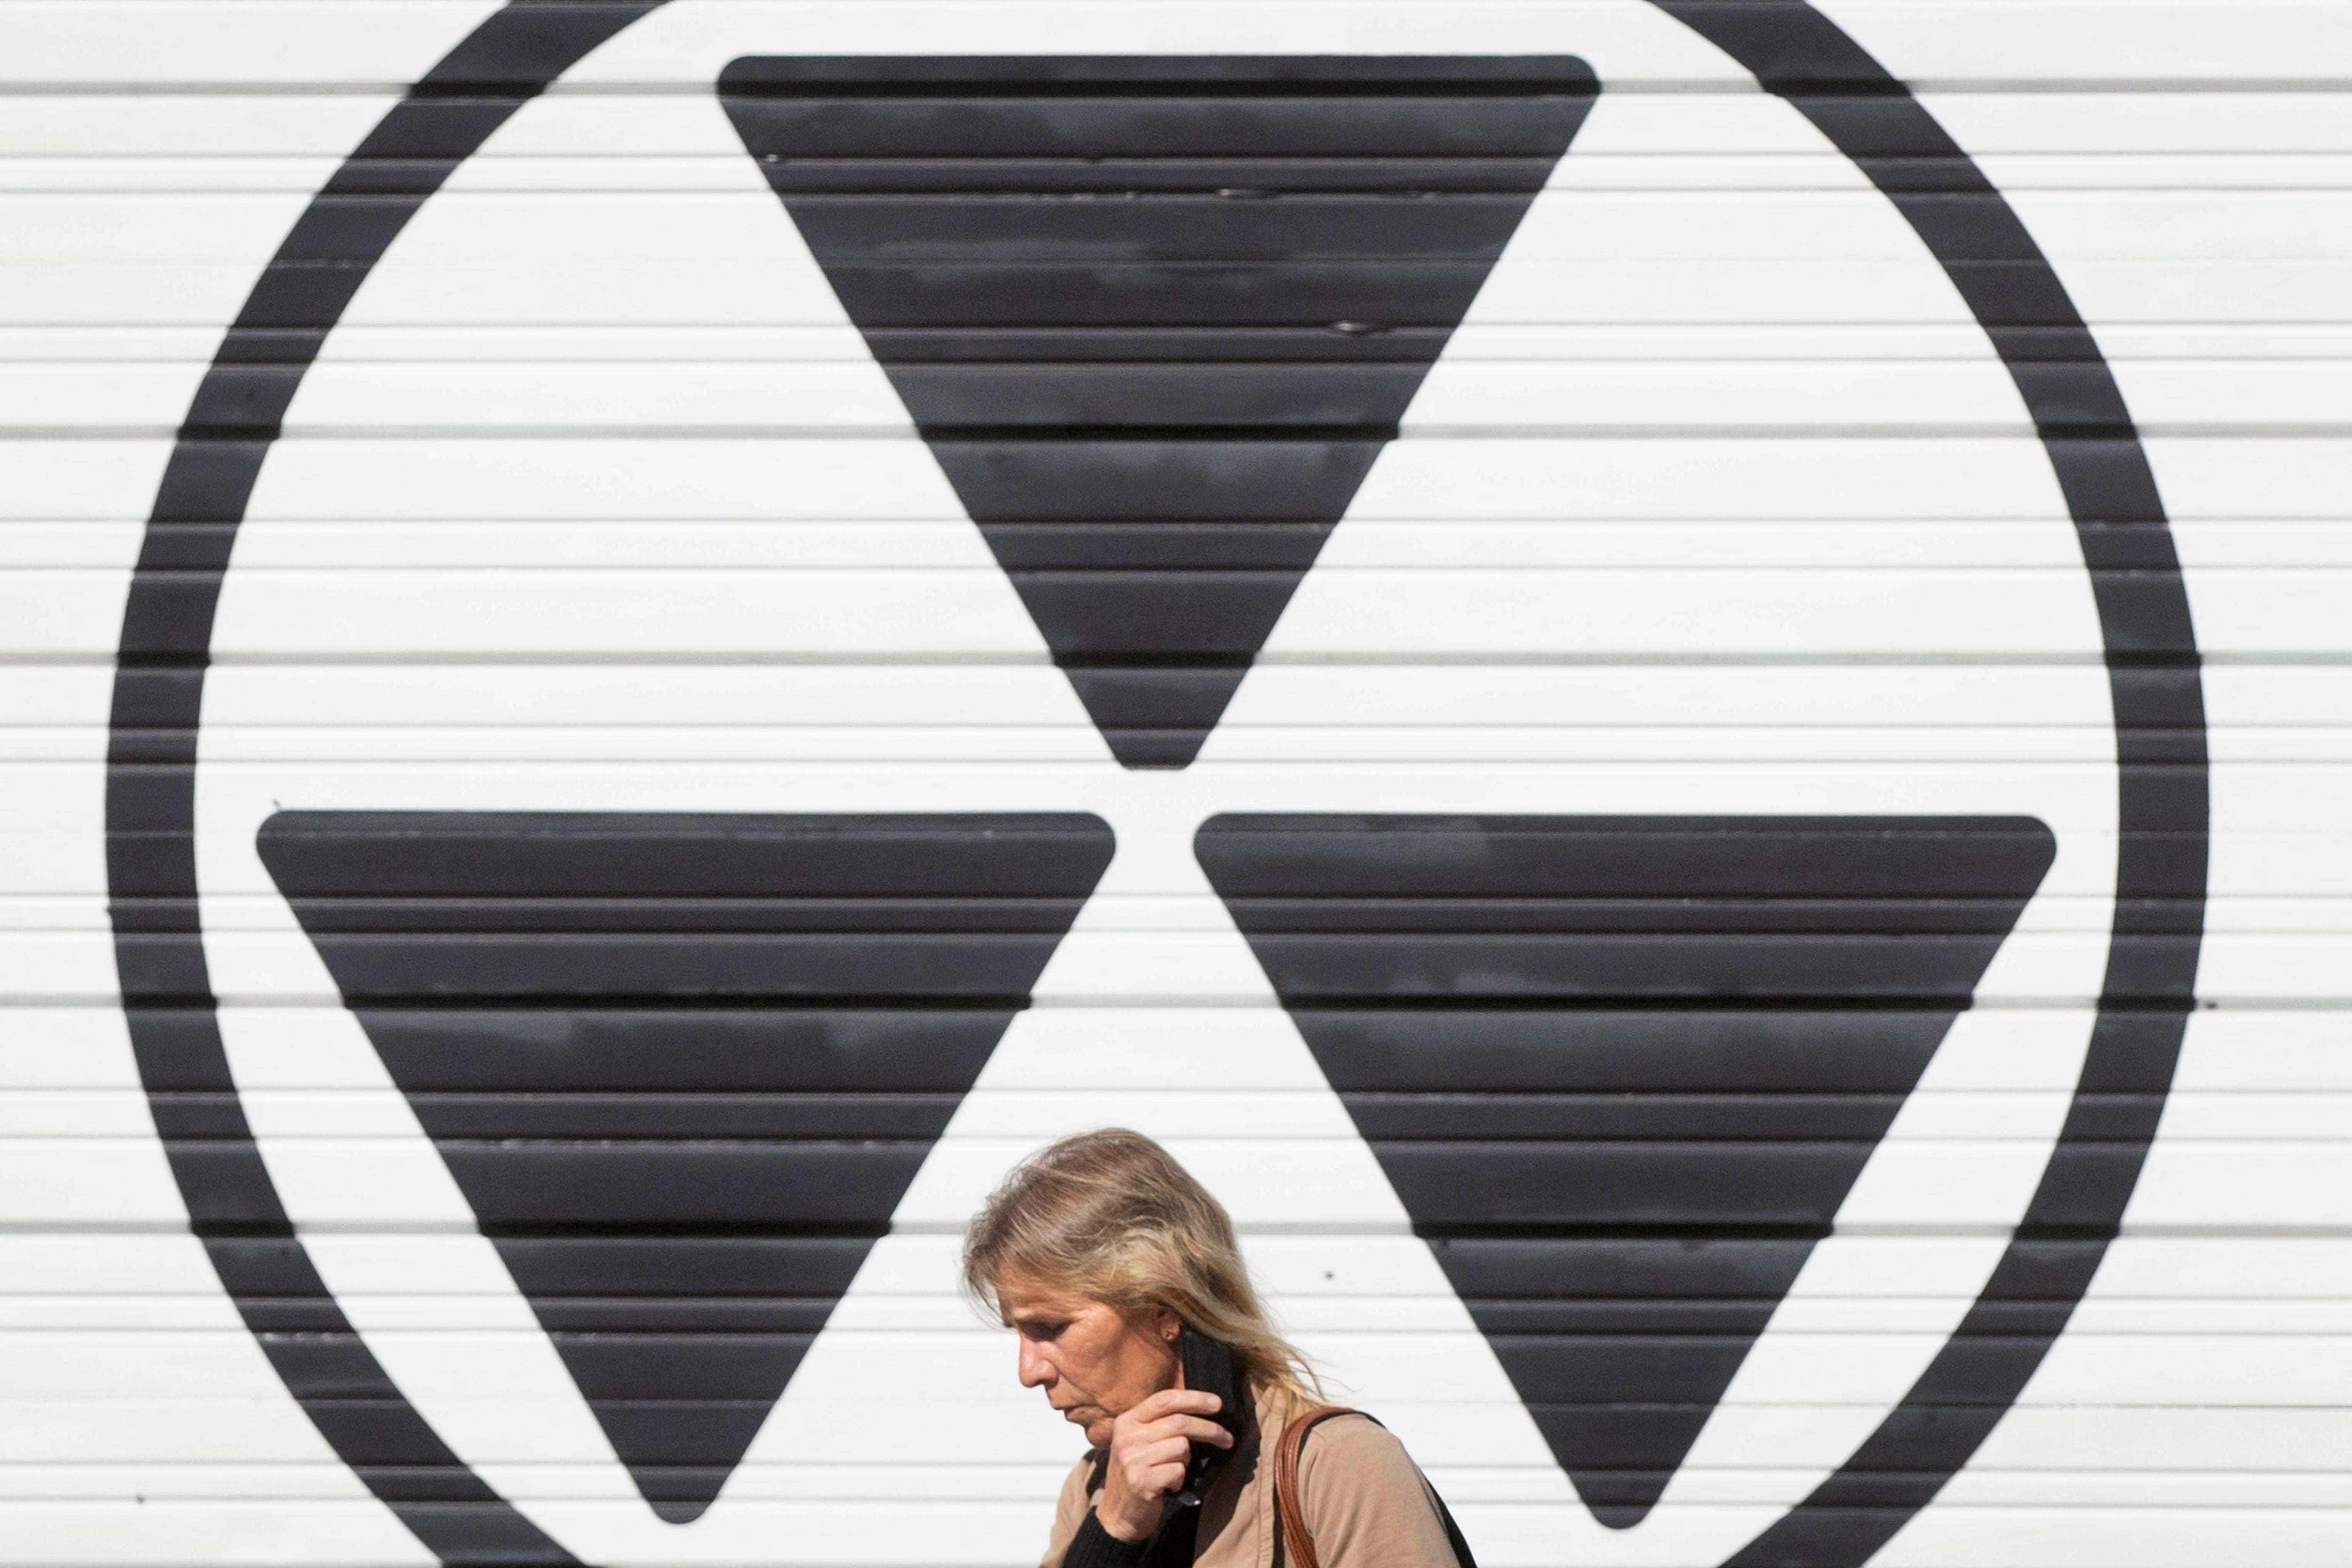 Irán: OIEA detectó uranio enriquecido a nivel próximo al requerido para bomba nuclear